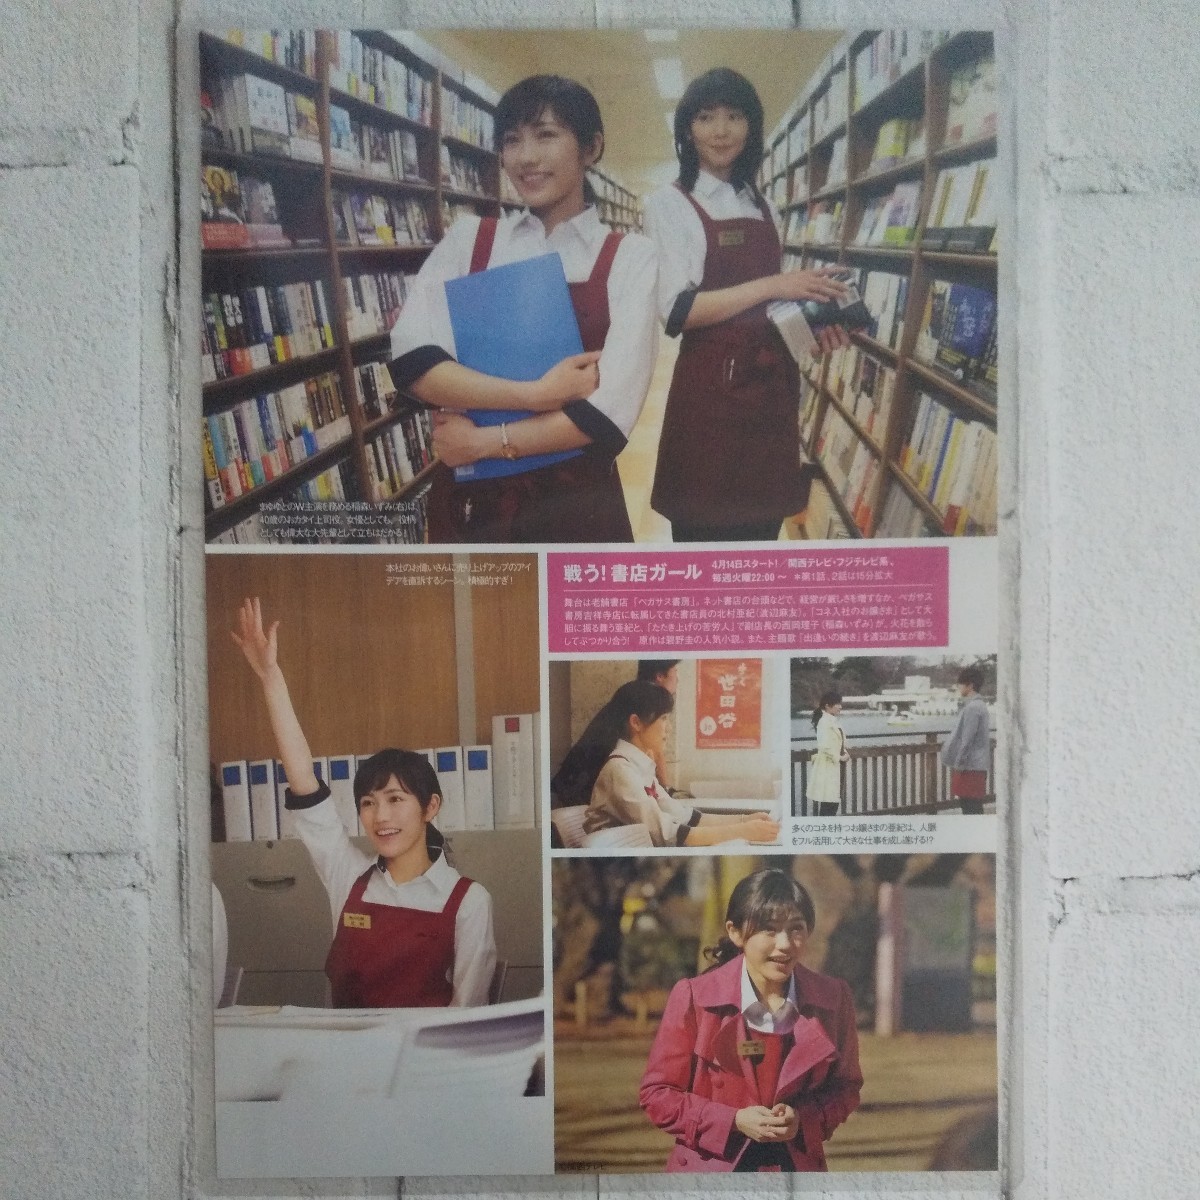 『雑誌グラビア ラミネート加工』O-360『渡辺麻友 AKB48 まゆゆ ドラマ』 プレイボーイ 2015年4月20日号 B5 2枚4ページ ※15_画像3